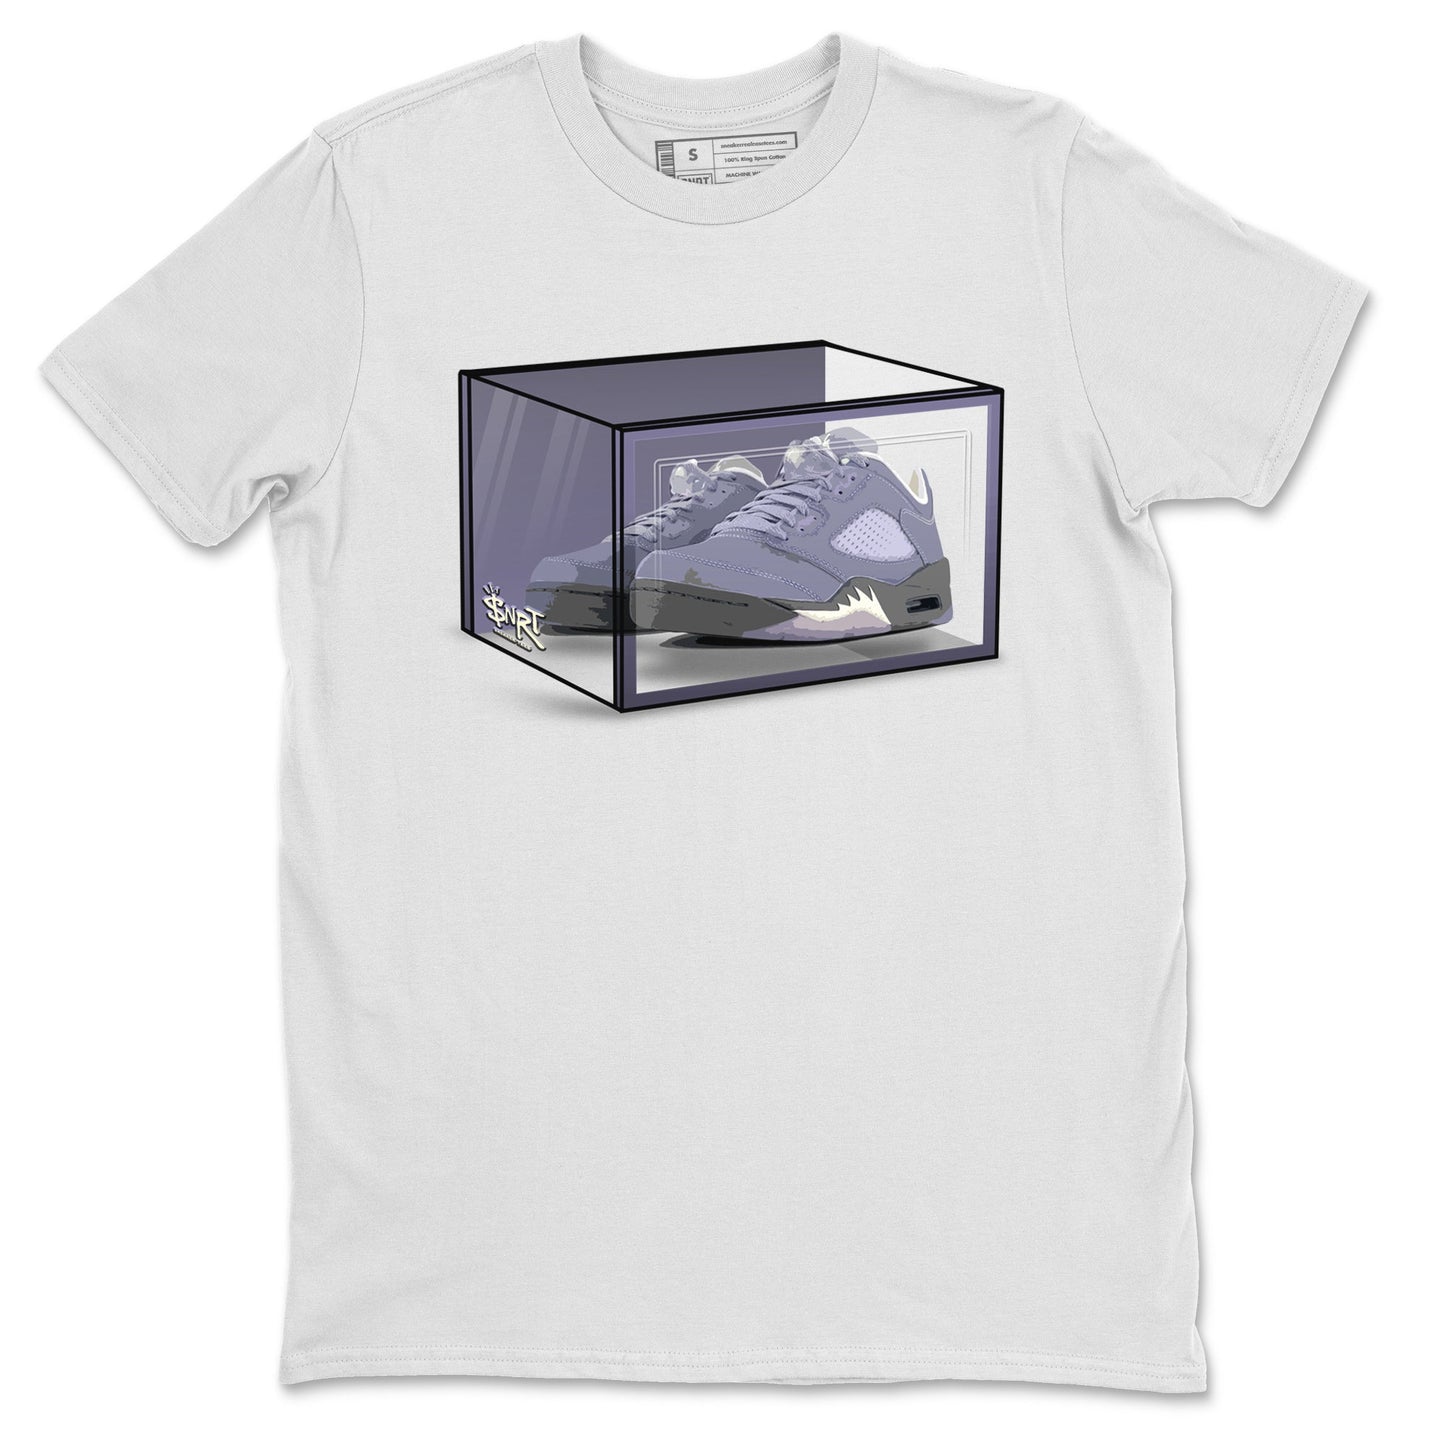 Air Jordan 5 Indigo Haze Sneaker Match Tees Shoe Box Sneaker Tees 5s Indigo Haze Sneaker Release Tees Unisex Shirts White 2